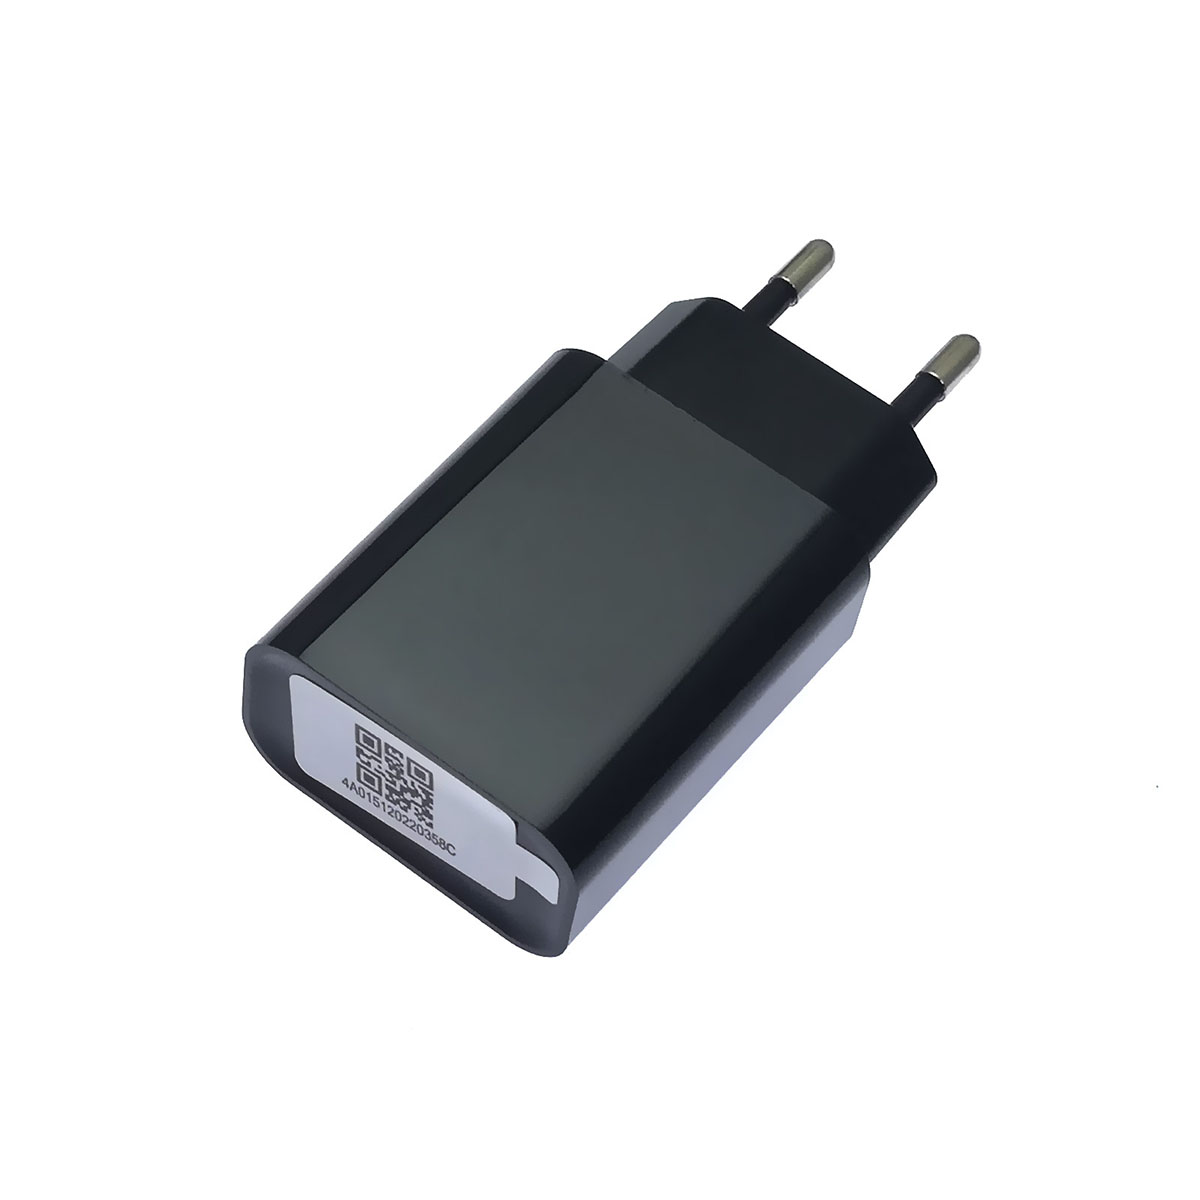 СЗУ (Сетевое зарядное устройство) QC3.0 с отдельным кабелем Micro USB, комплект 2 в 1, цвет черный